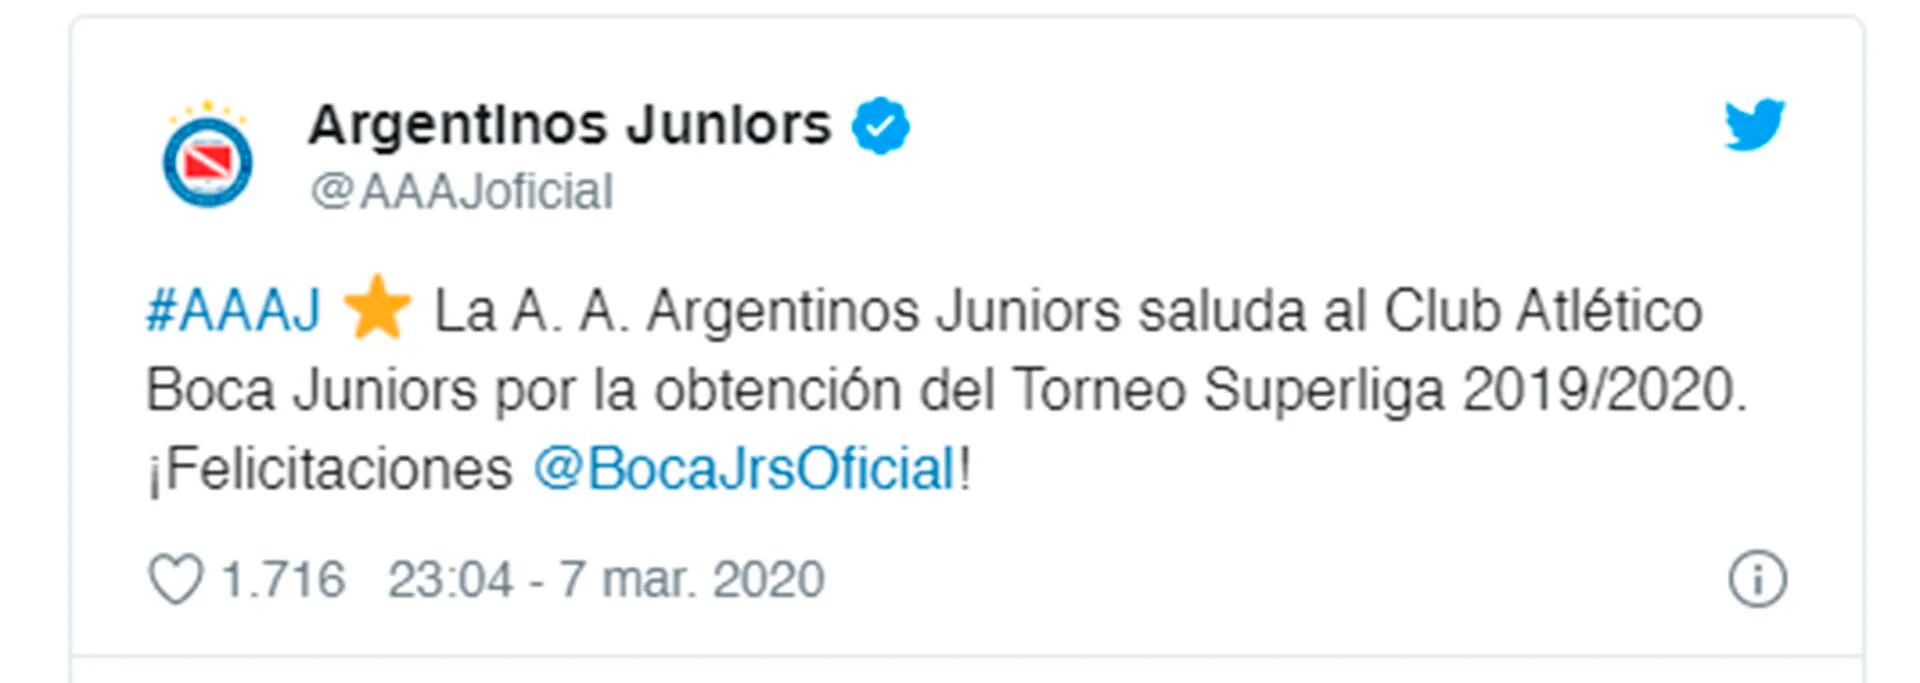 El mensaje de Argentinos Juniors a Boca por campeonato logrado